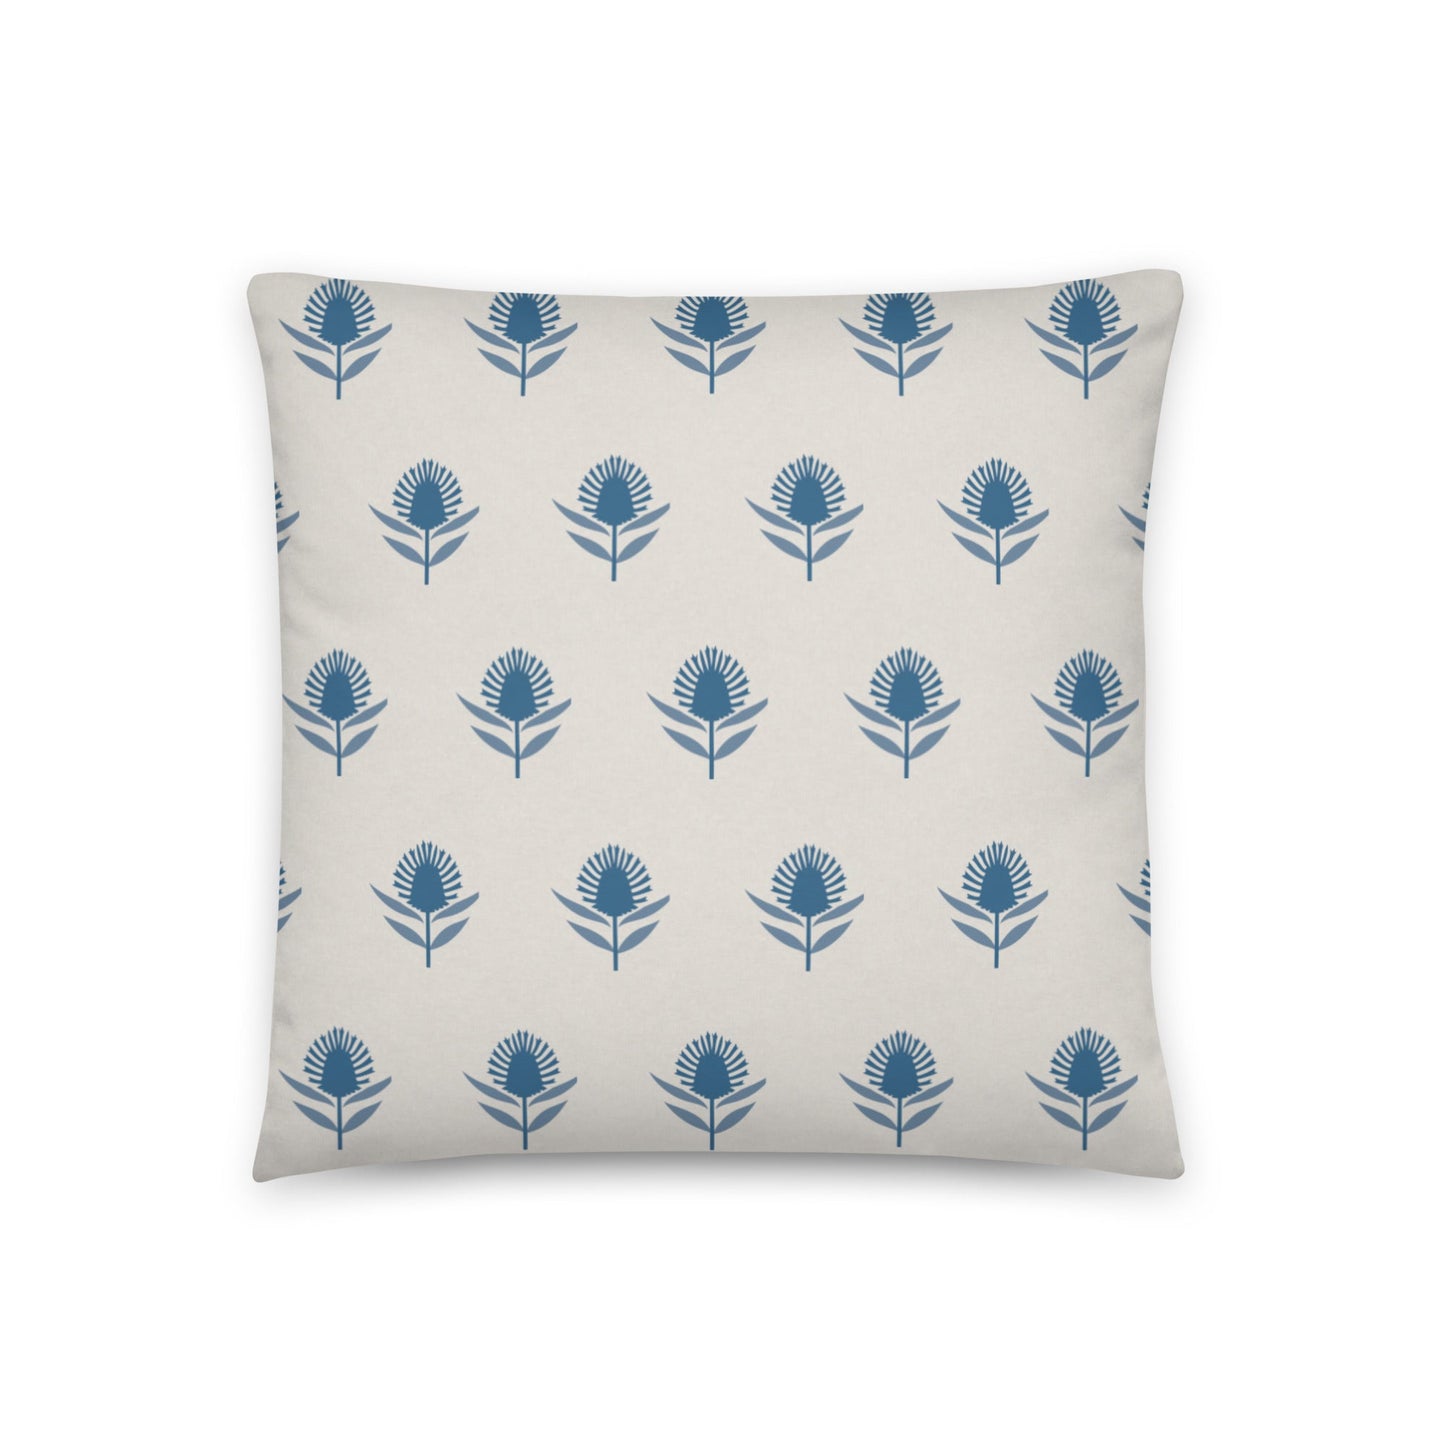 Bonney Lake Blue Thistle Accent Pillow Cover